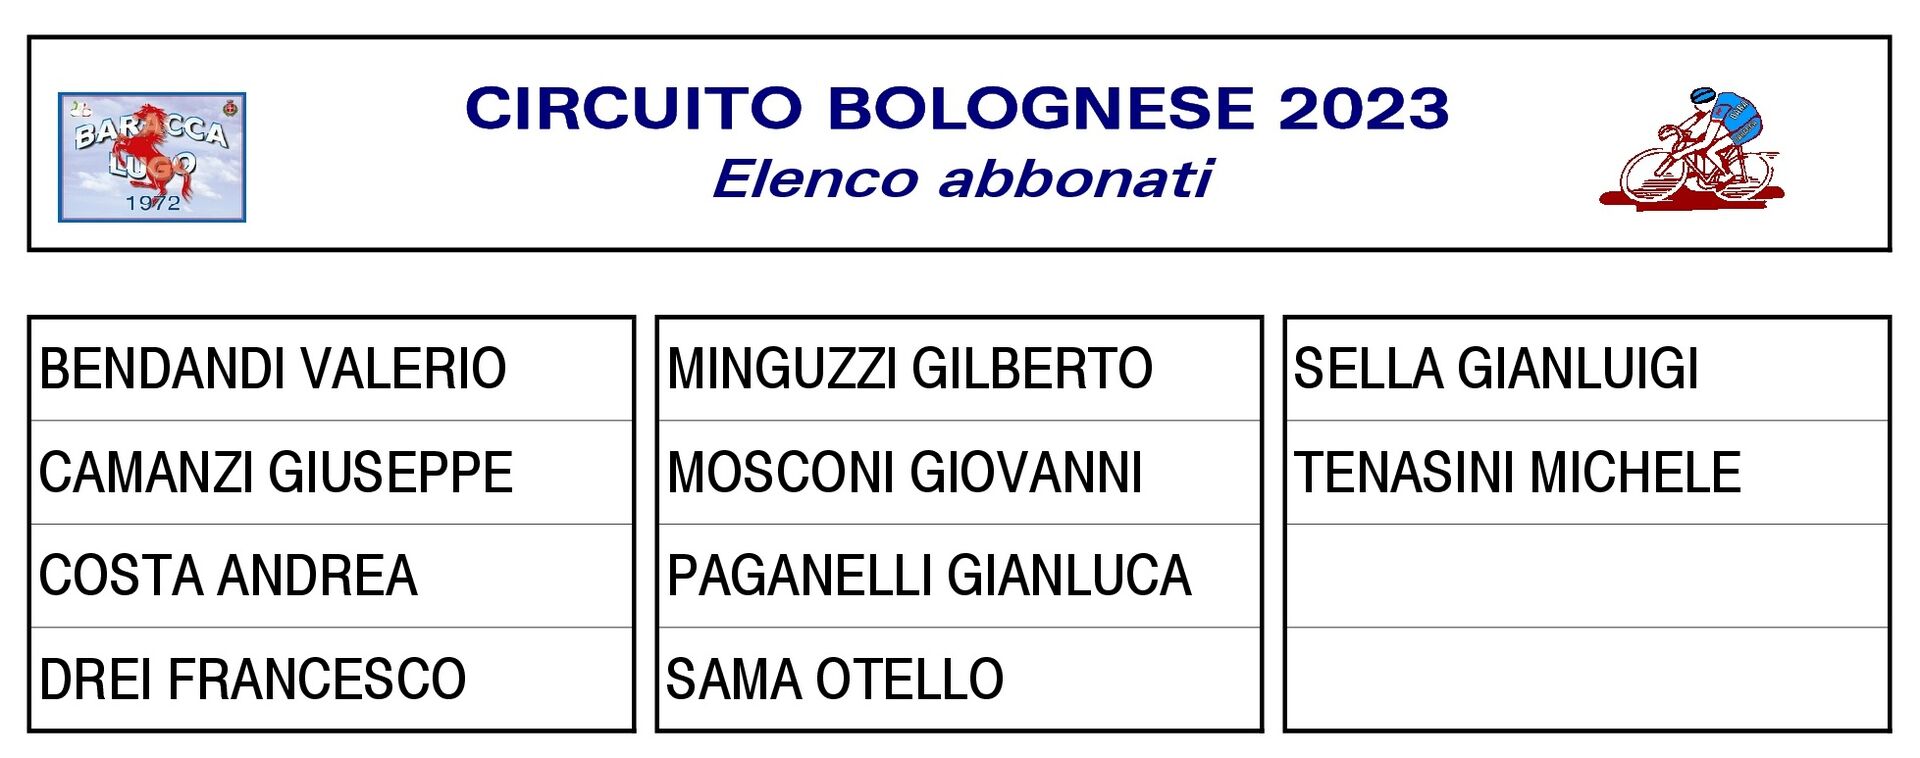 Circuito Bolognese elenco abbonati